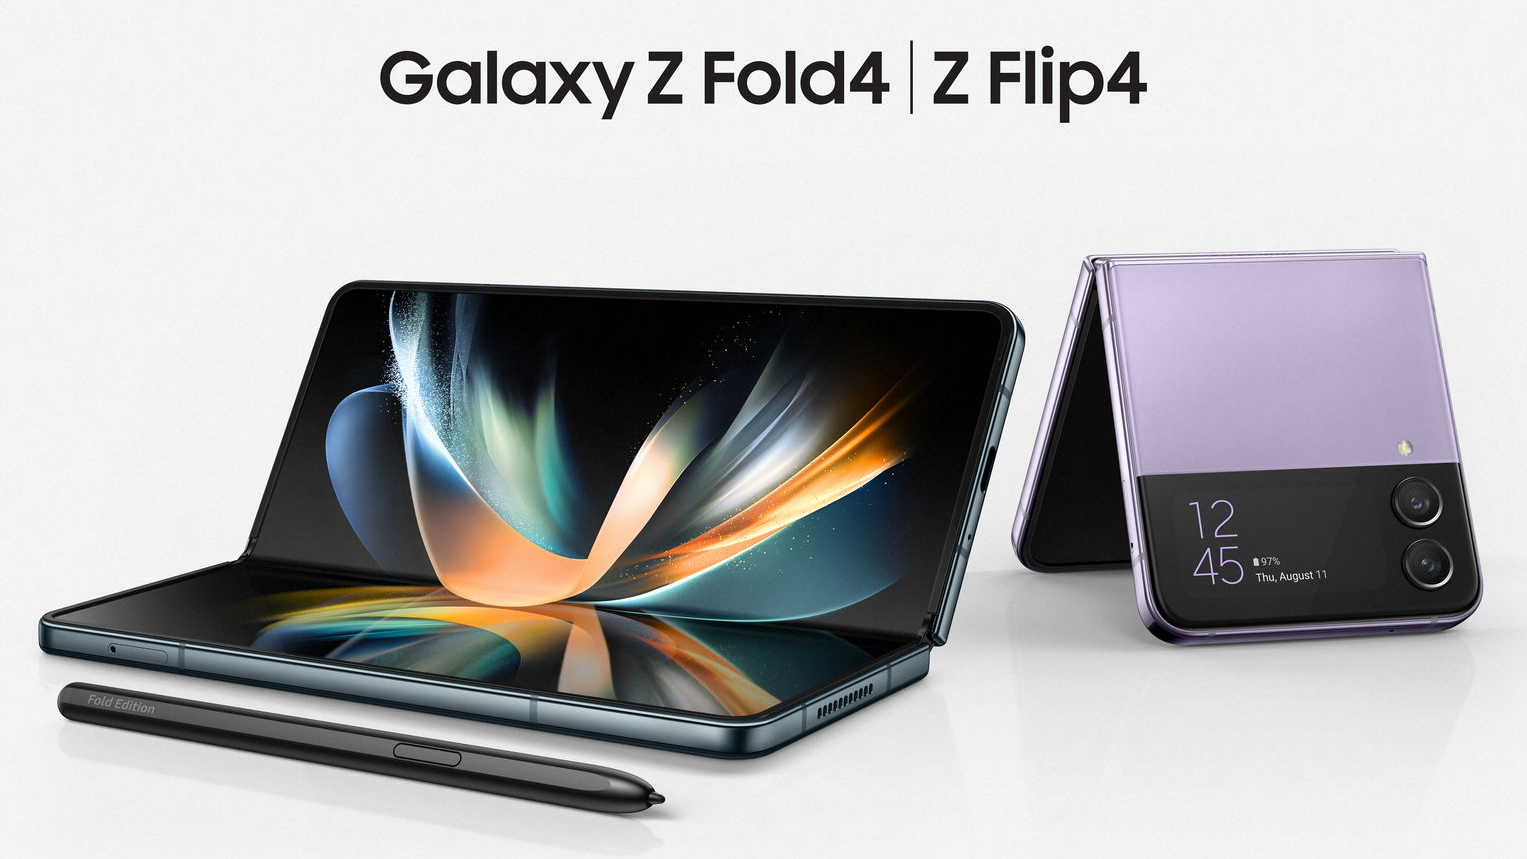 Špičkové skládačky v nové generaci. Samsung Galaxy Z Fold4 a Flip4 zaujmou každého na první pohled